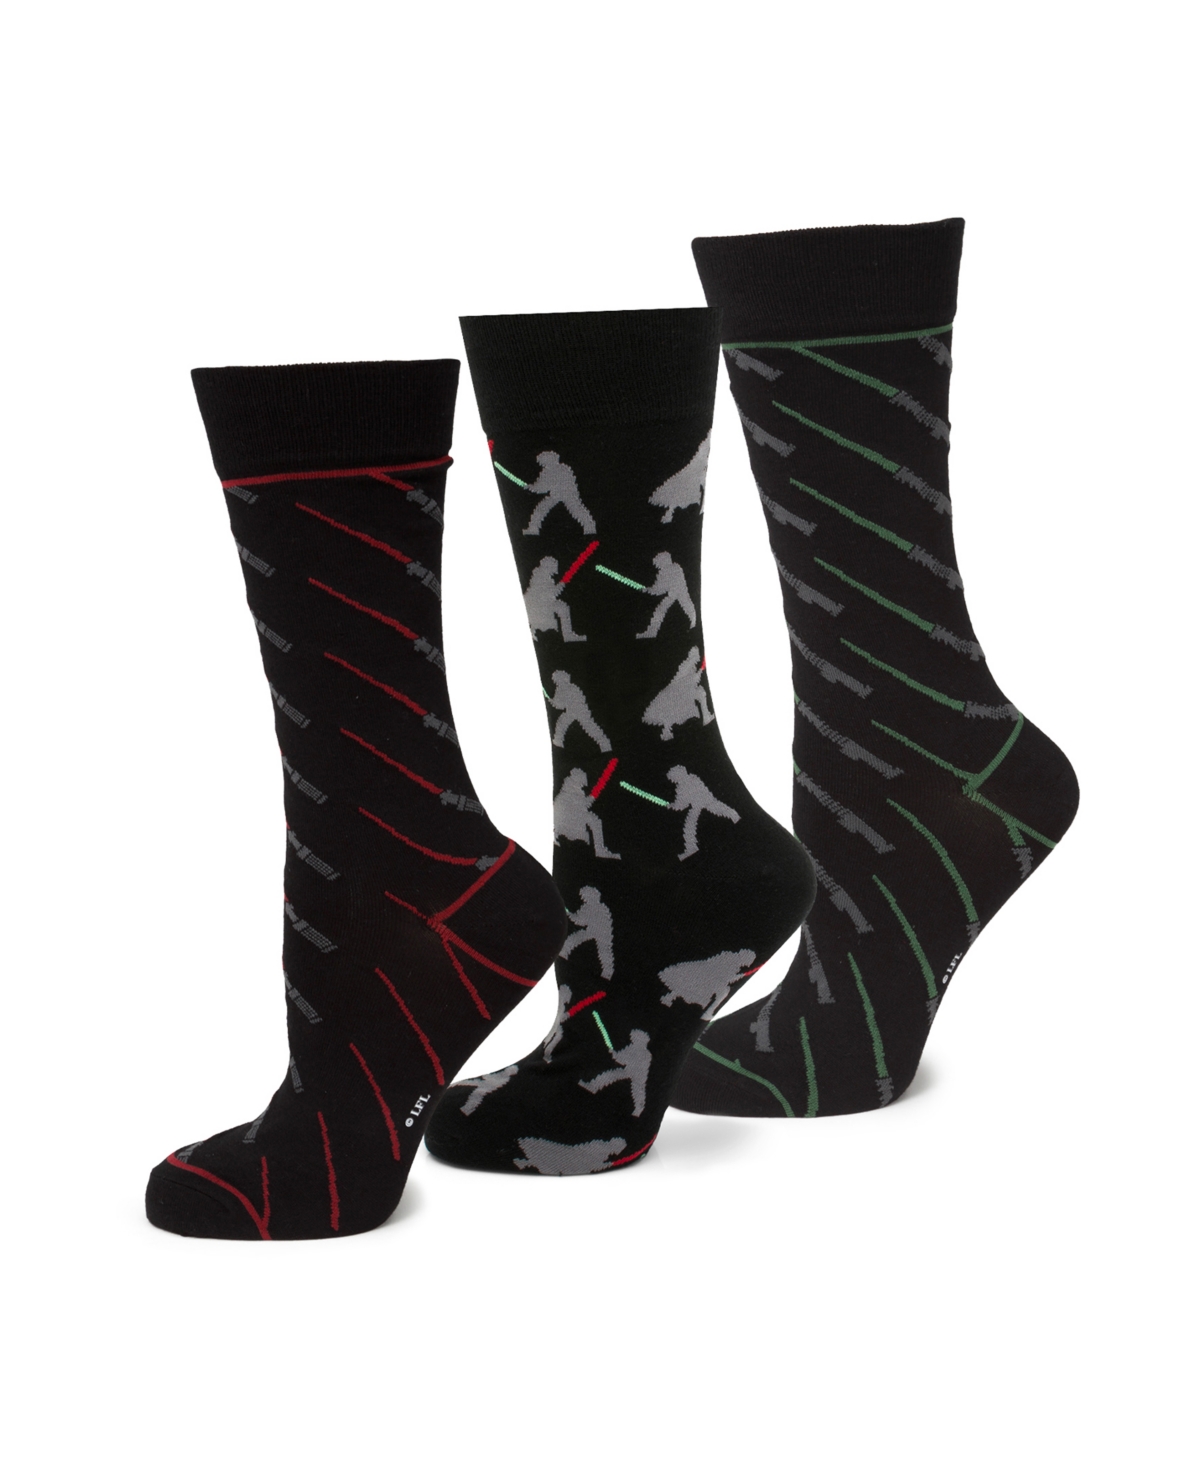 Men's Light Saber Battle Socks Gift Set, Pack of 3 - Multi